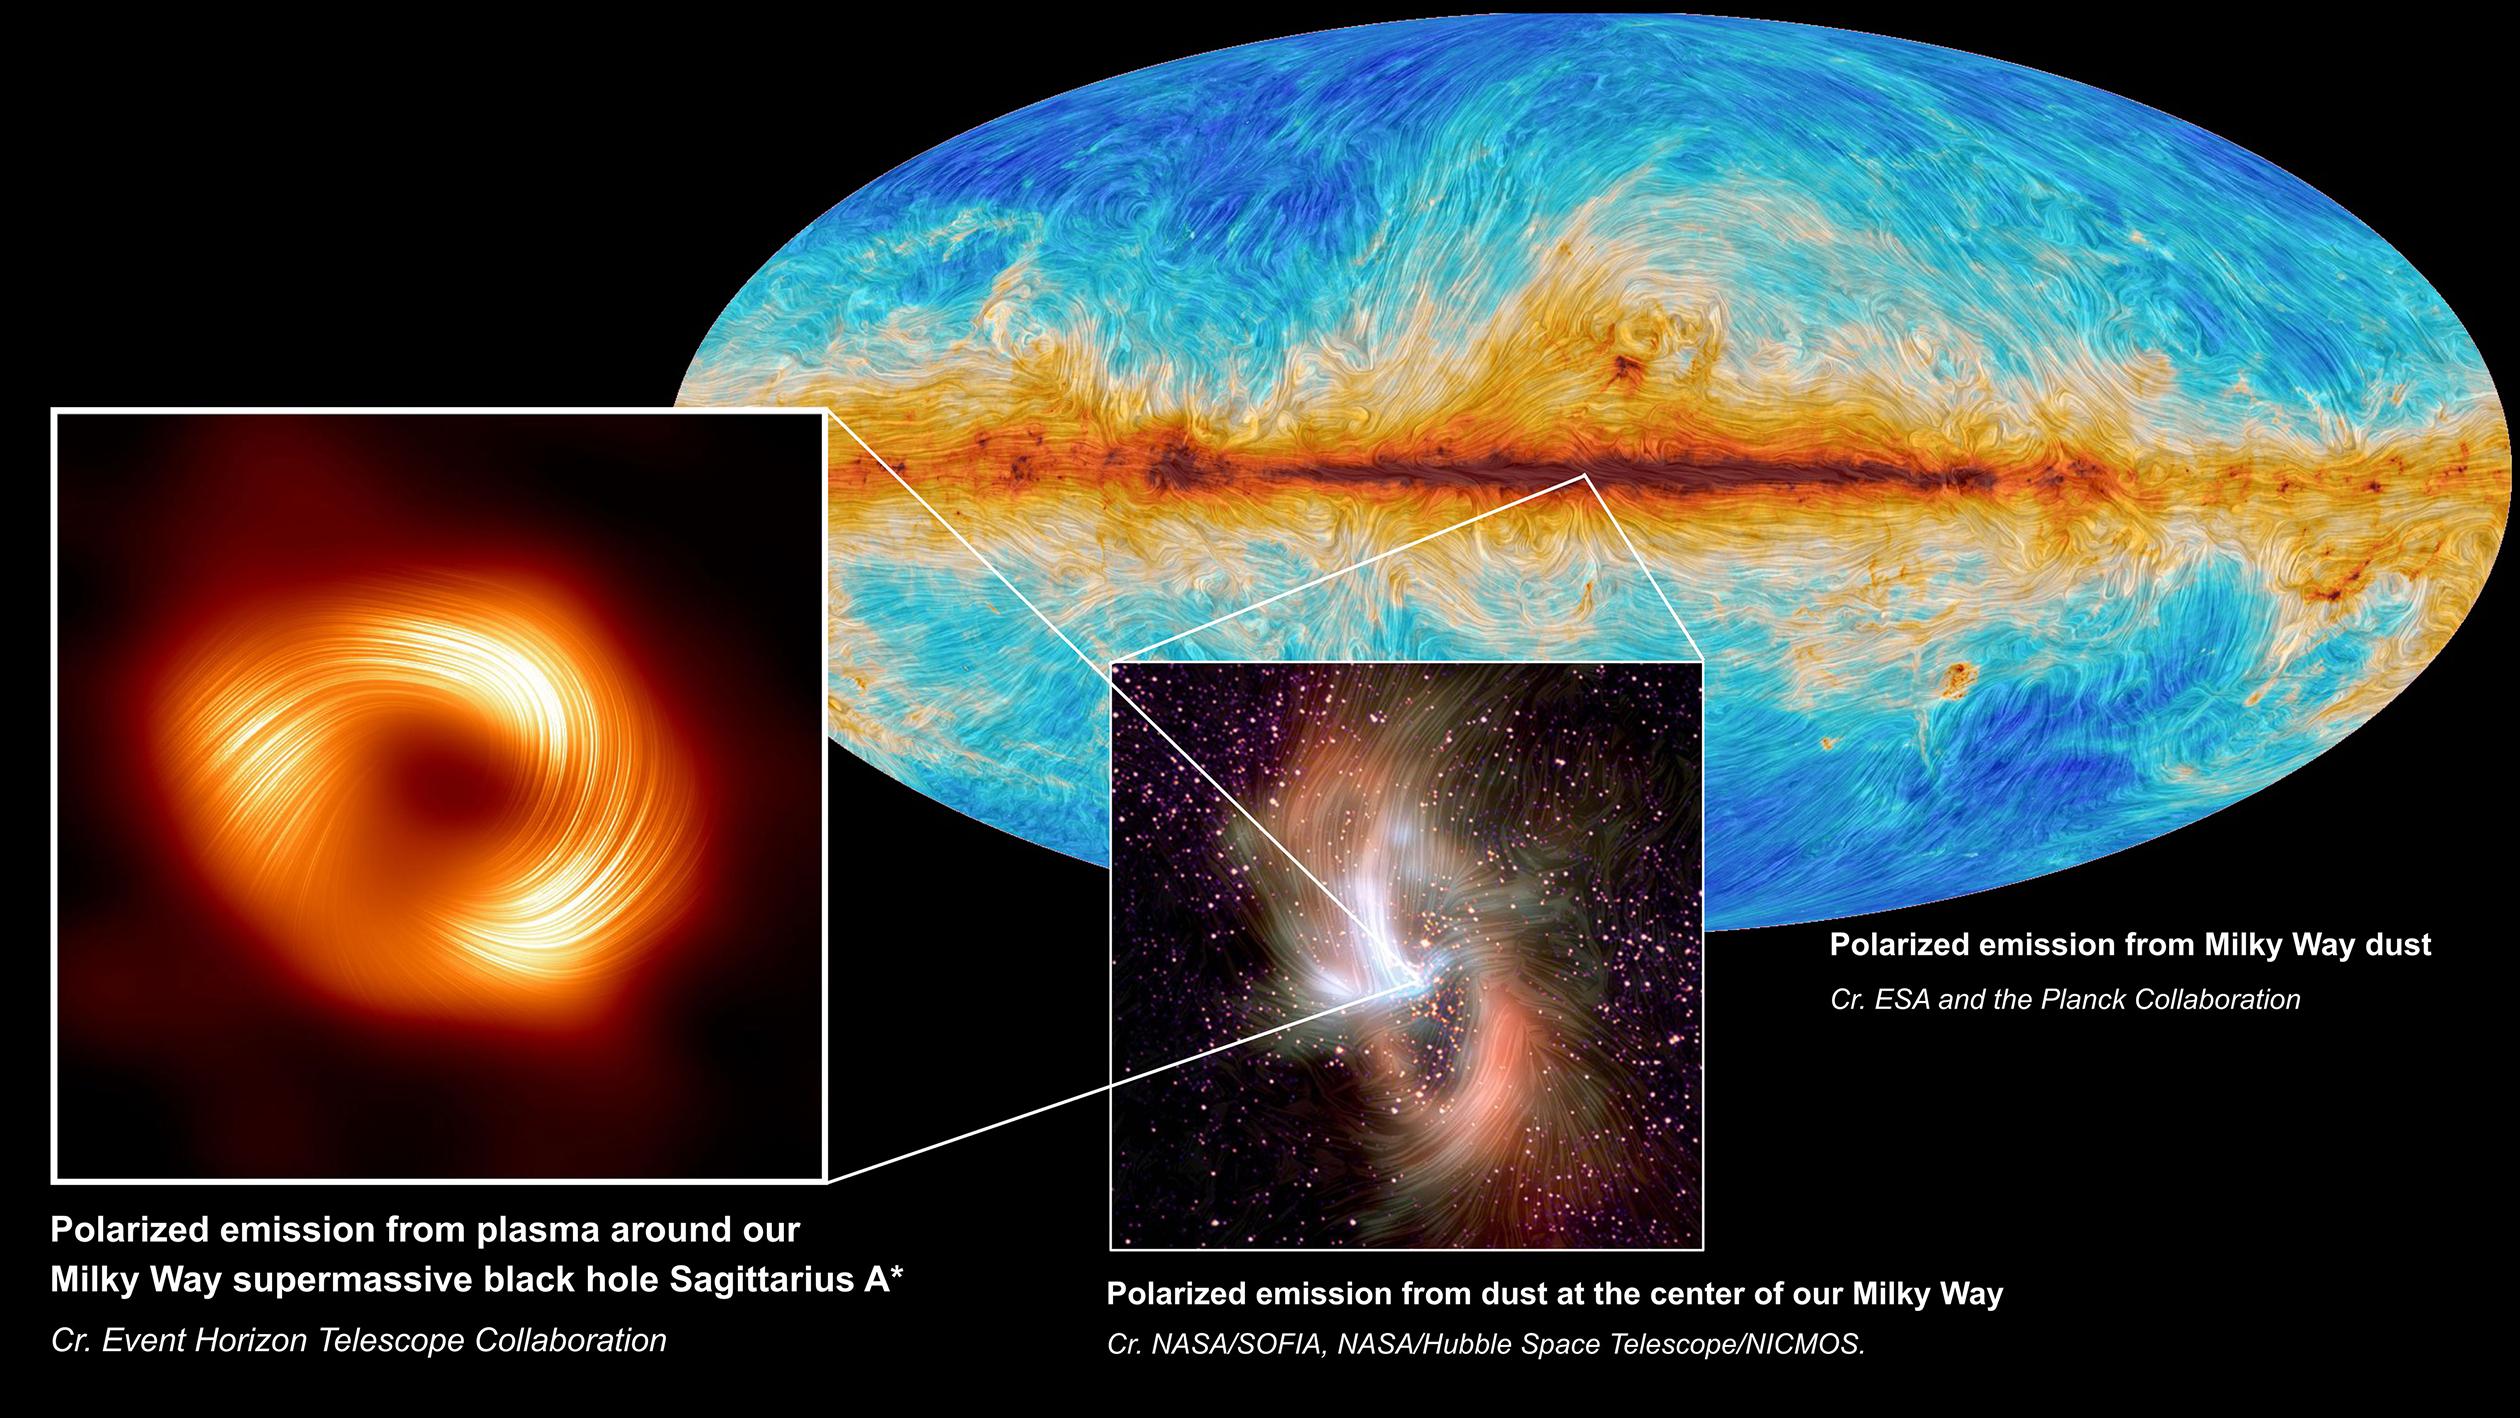 À gauche, le trou noir supermassif au centre de la Voie lactée, Sagittarius A*, est vu en lumière polarisée, les lignes visibles indiquent l'orientation de la polarisation: elle est liée au champ magnétique autour de l'ombre du trou noir. Au centre, l'émission polarisée du centre de la Voie Lactée. Au fond à droite, la Collaboration Planck a cartographié l'émission polarisée de la poussière à travers la Voie Lactée. [EHT Collaboration - S. Issaoun]